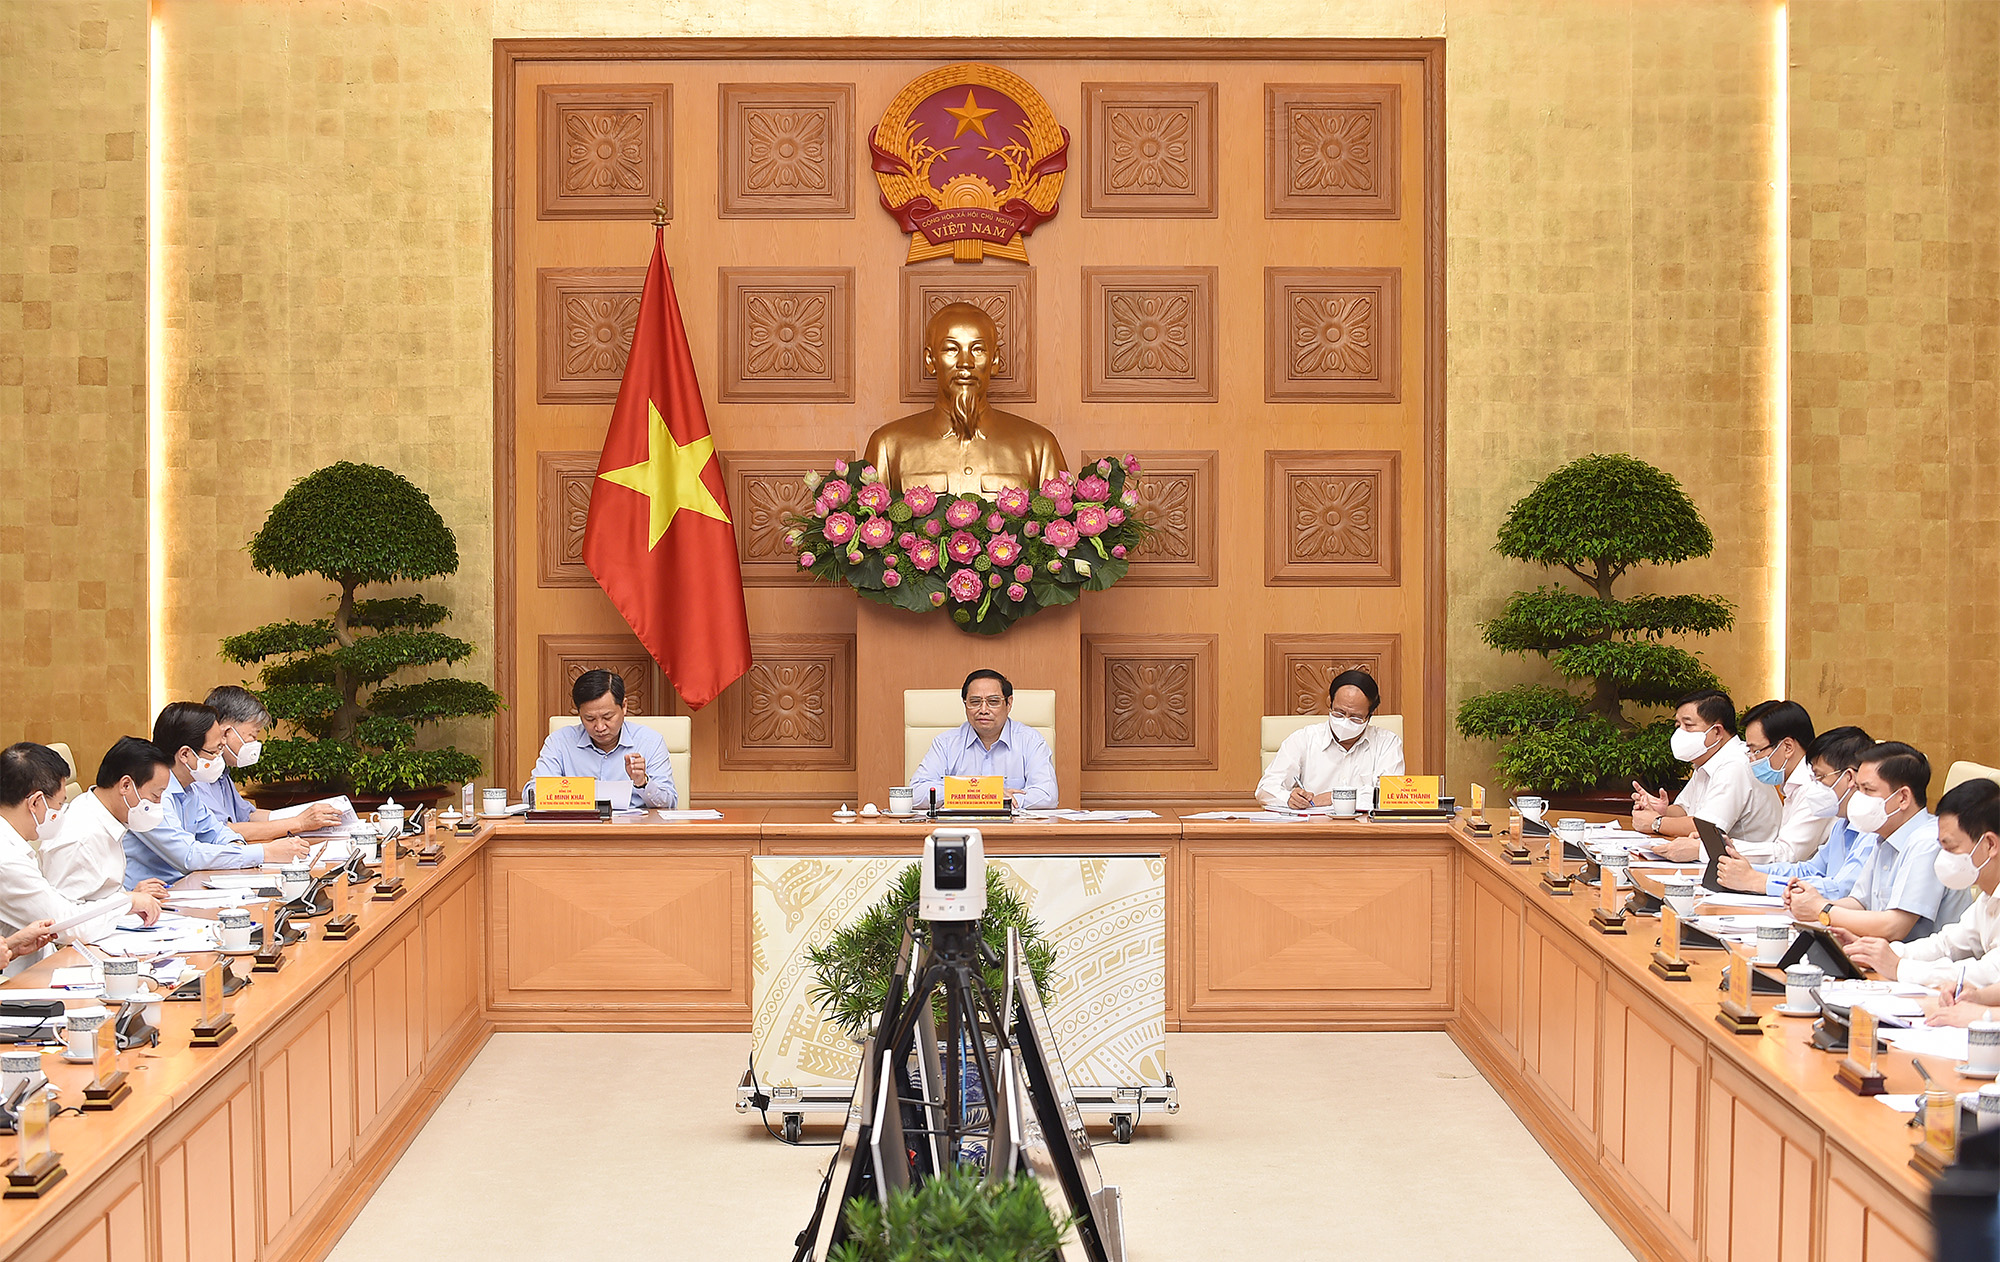 Thủ tướng Phạm Minh Chính chủ trì Hội nghị trực tuyến toàn quốc của Chính phủ để lắng nghe, chia sẻ, hỗ trợ, tháo gỡ khó khăn, thúc đẩy sản xuất kinh doanh cho doanh nghiệp trong bối cảnh đại dịch COVID-19.